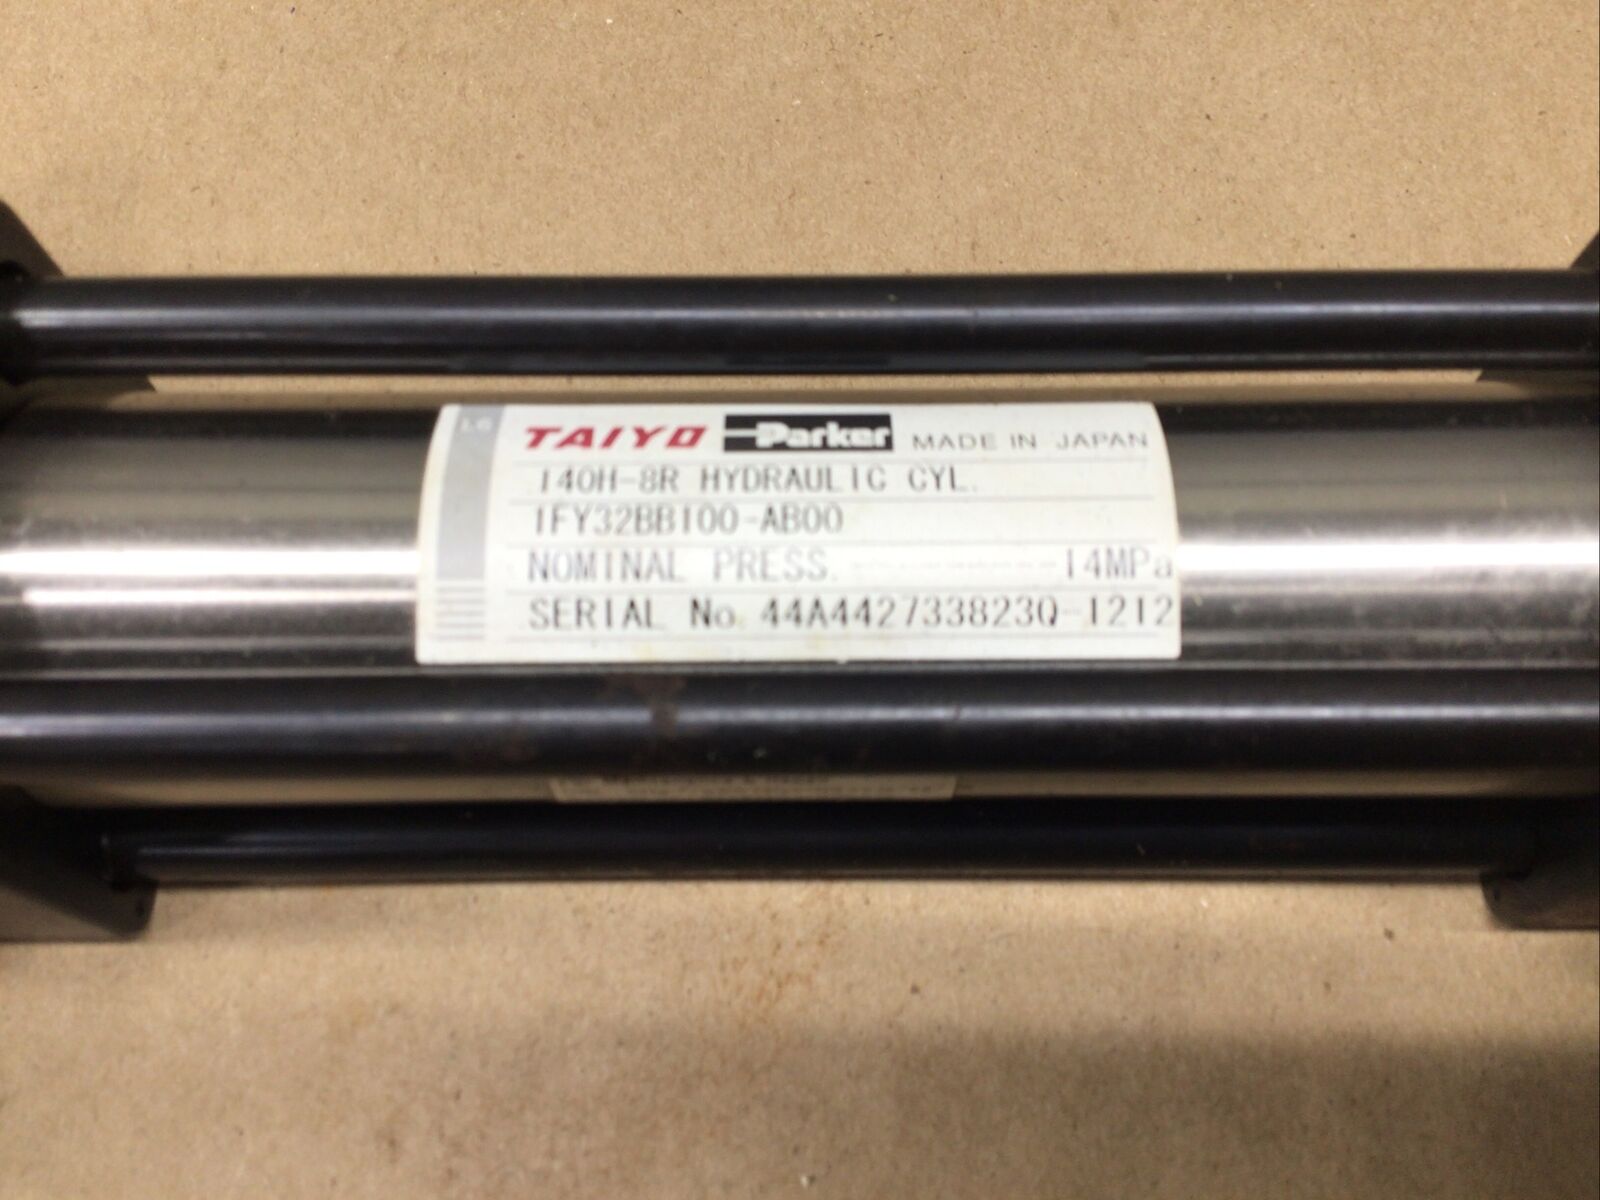 Taiyo 1FY32BB100-AB00 140H-8R Hydraulic Cylinder 14MPa #50A84PR2 